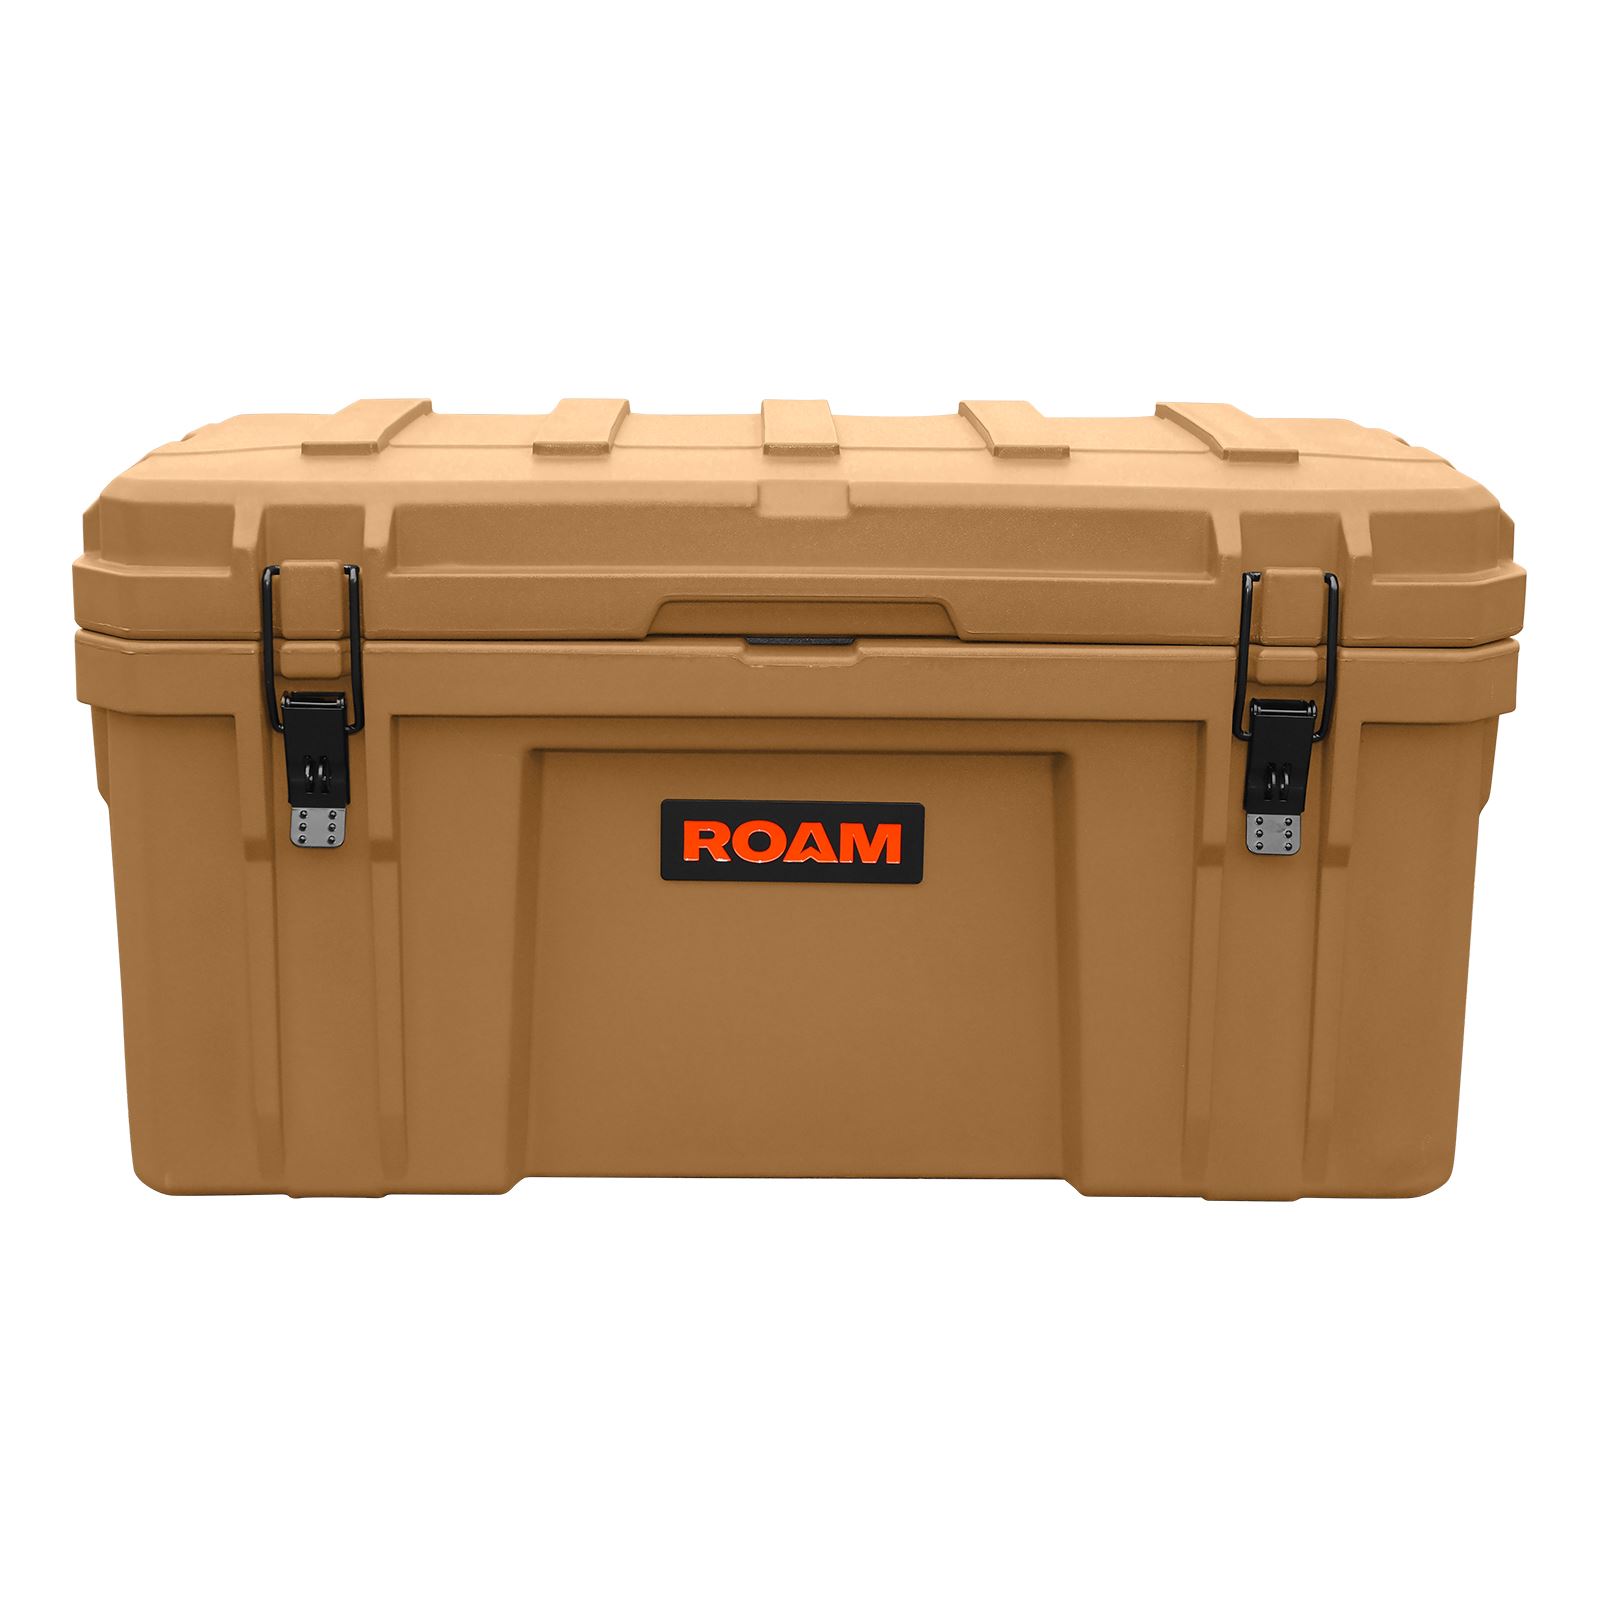 ROAM ADVENTURE ロームアドベンチャー ラギットケース ラゲットケース 82L 正規品 ラゲッジボックス キャンプ アウトドア 用品